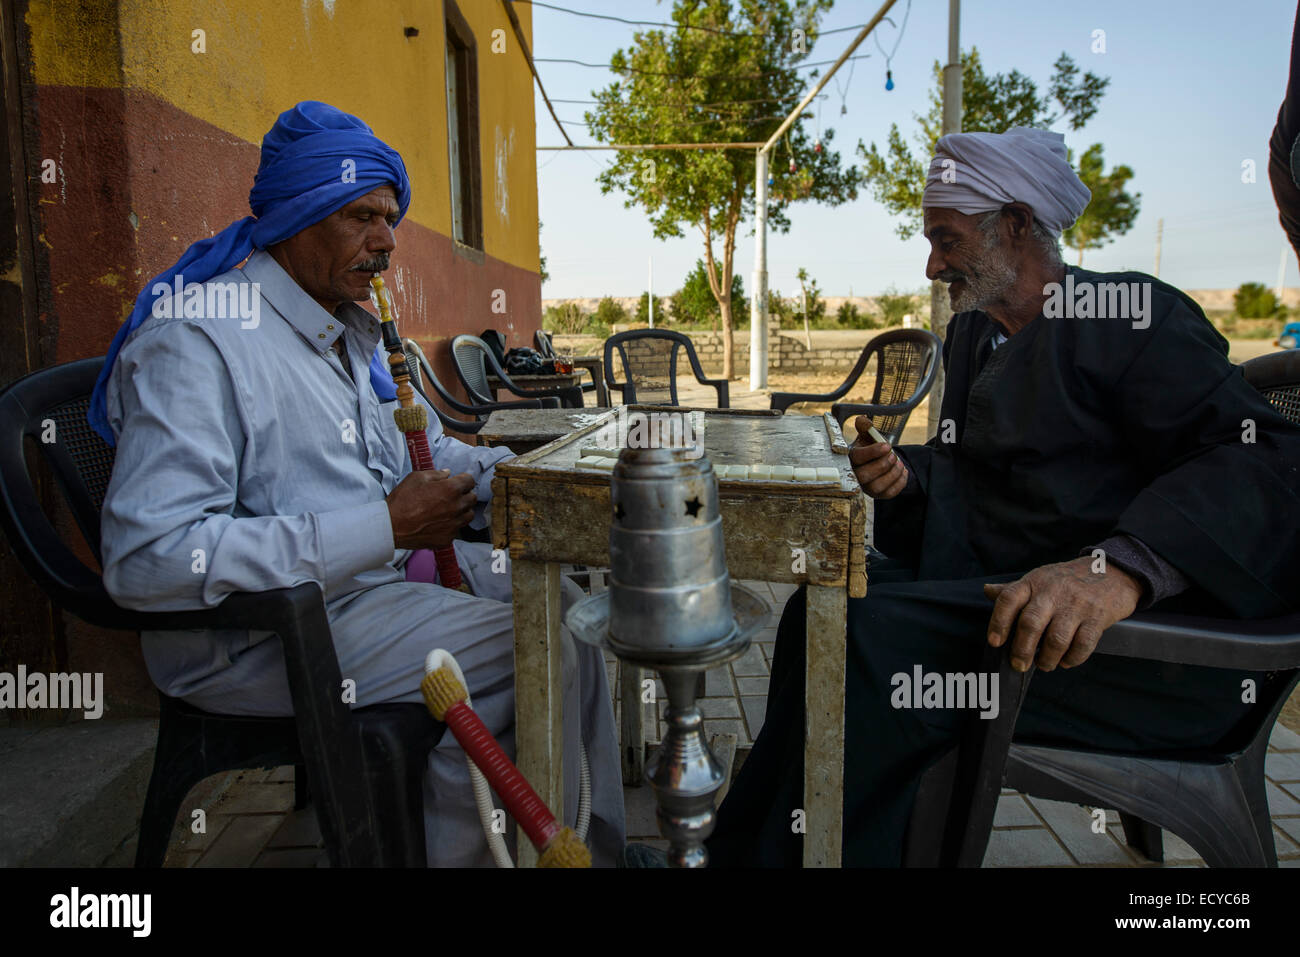 Männer spielen Domino in einer Oase, Ägypten Stock Photo